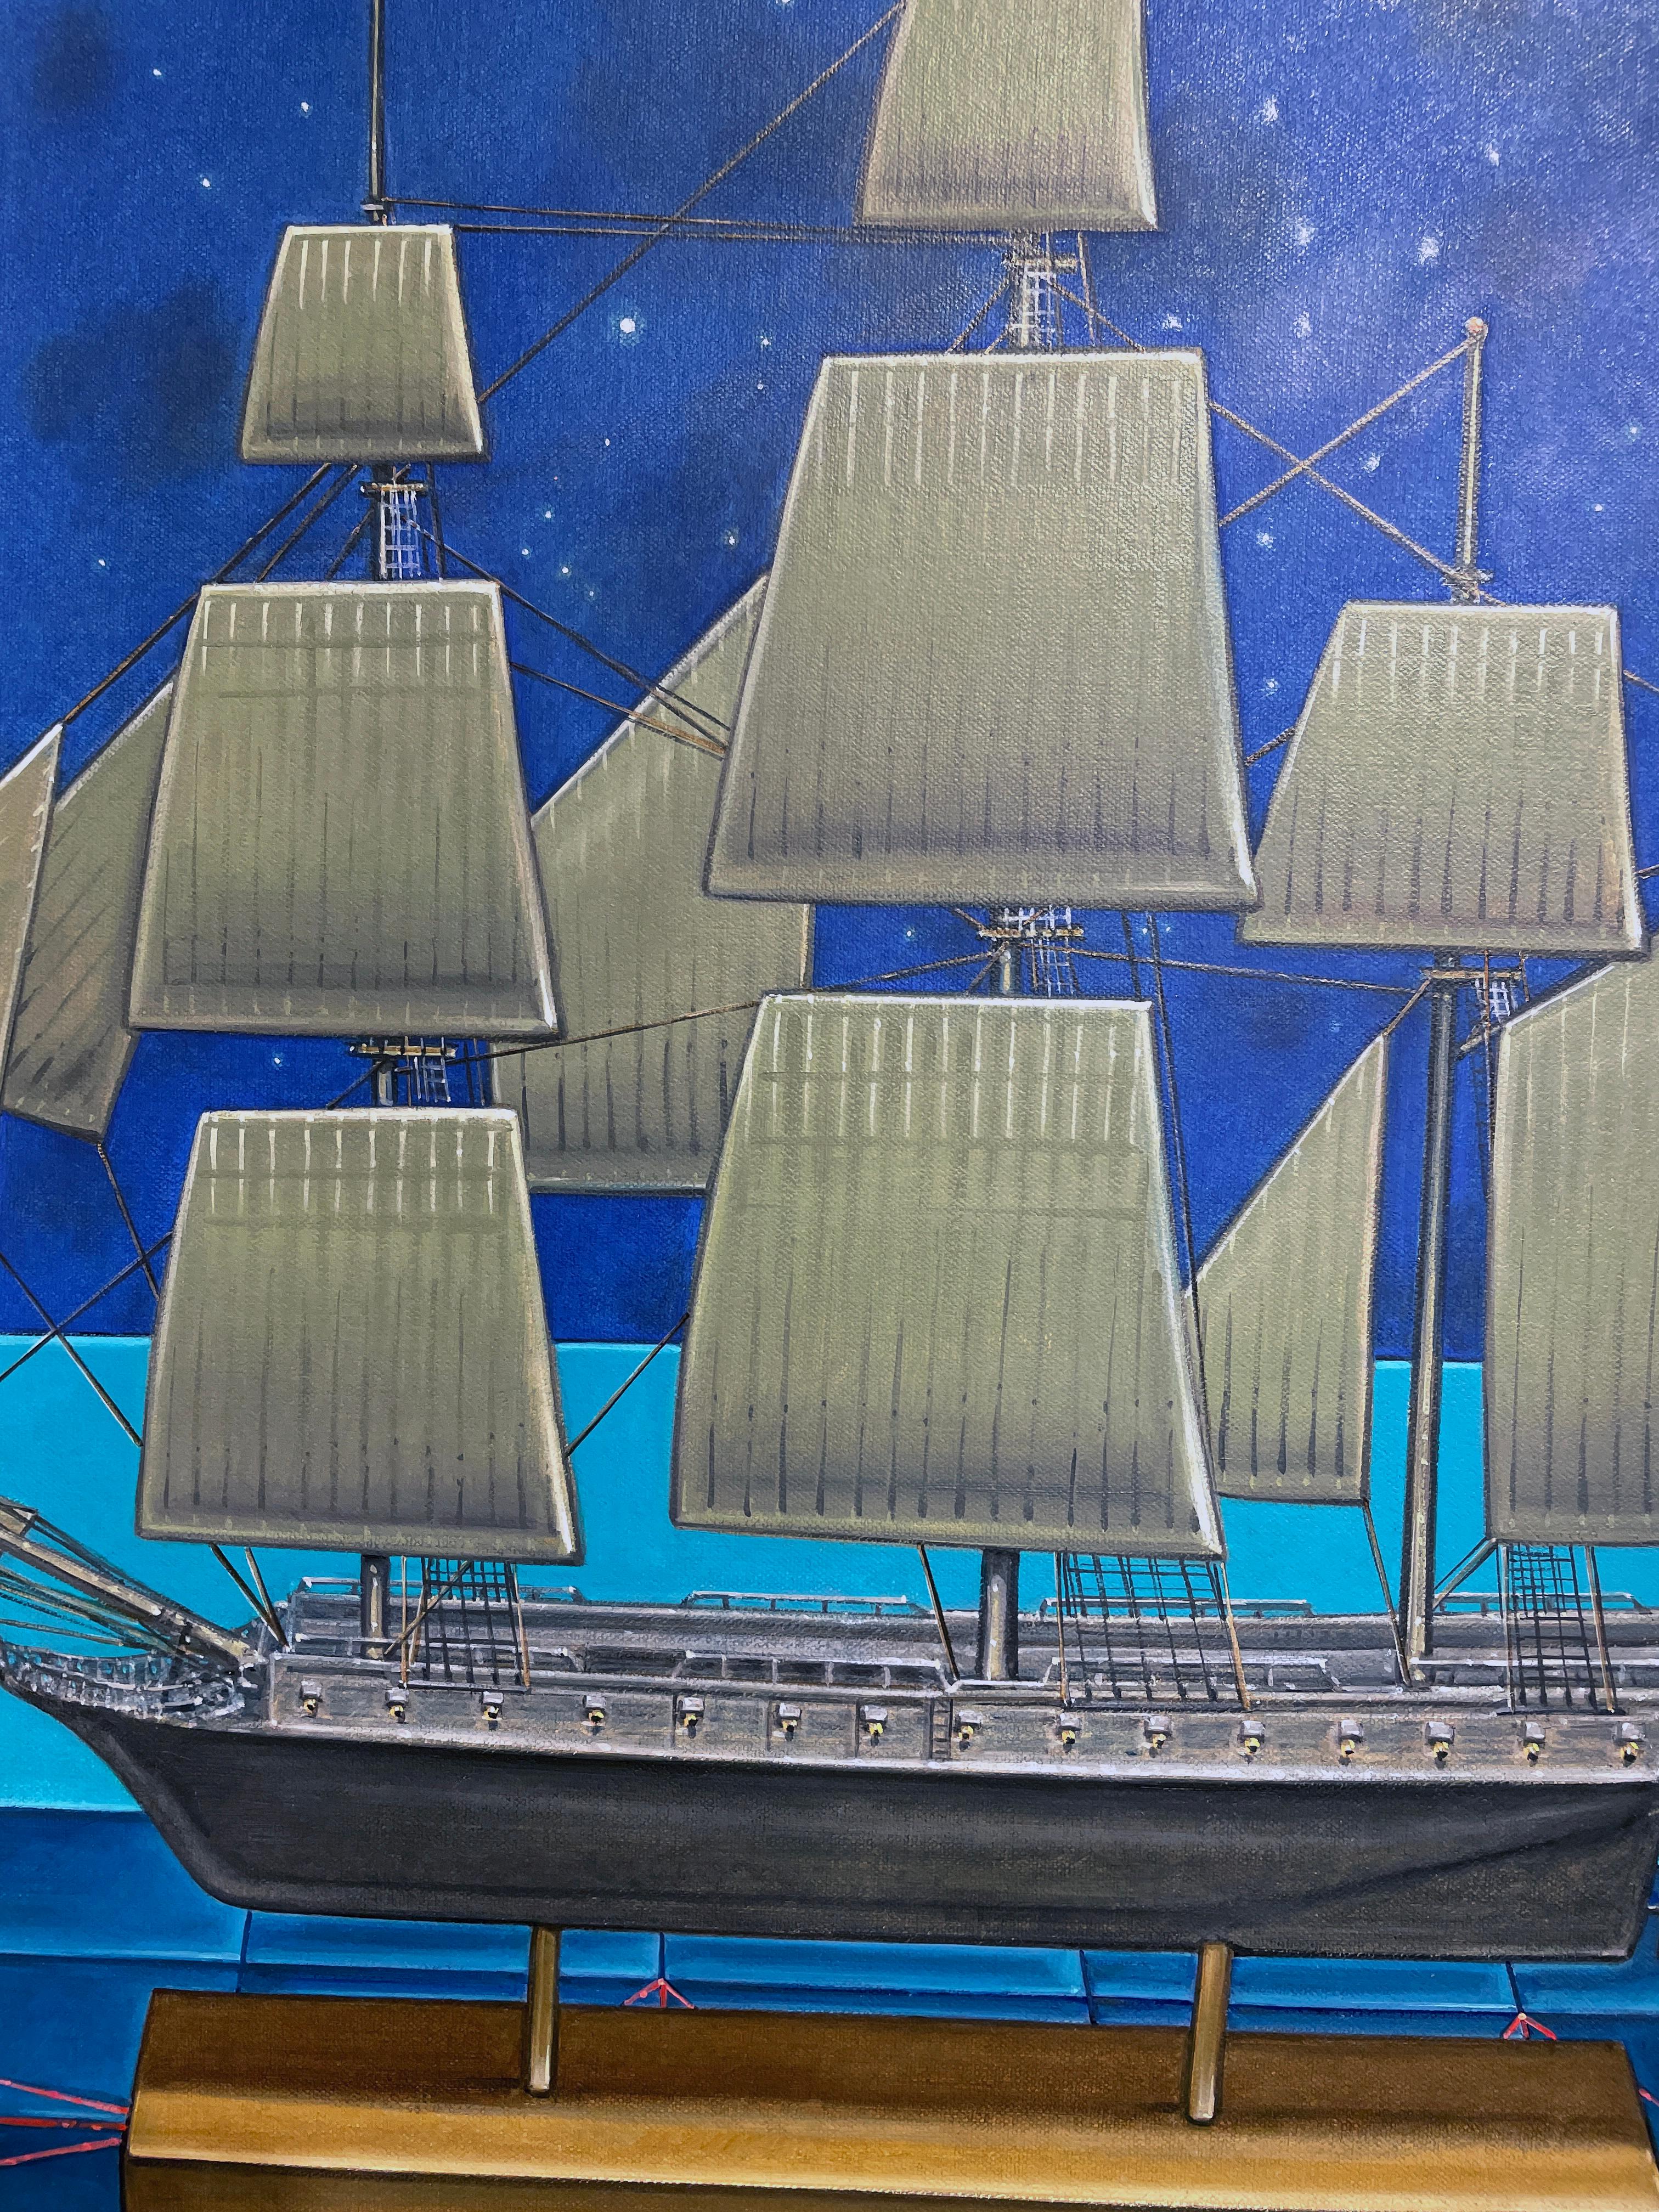 Ein Modell eines Piratenschiffs dominiert den geometrischen Hintergrund dieses rätselhaften Gemäldes mit dem Titel 